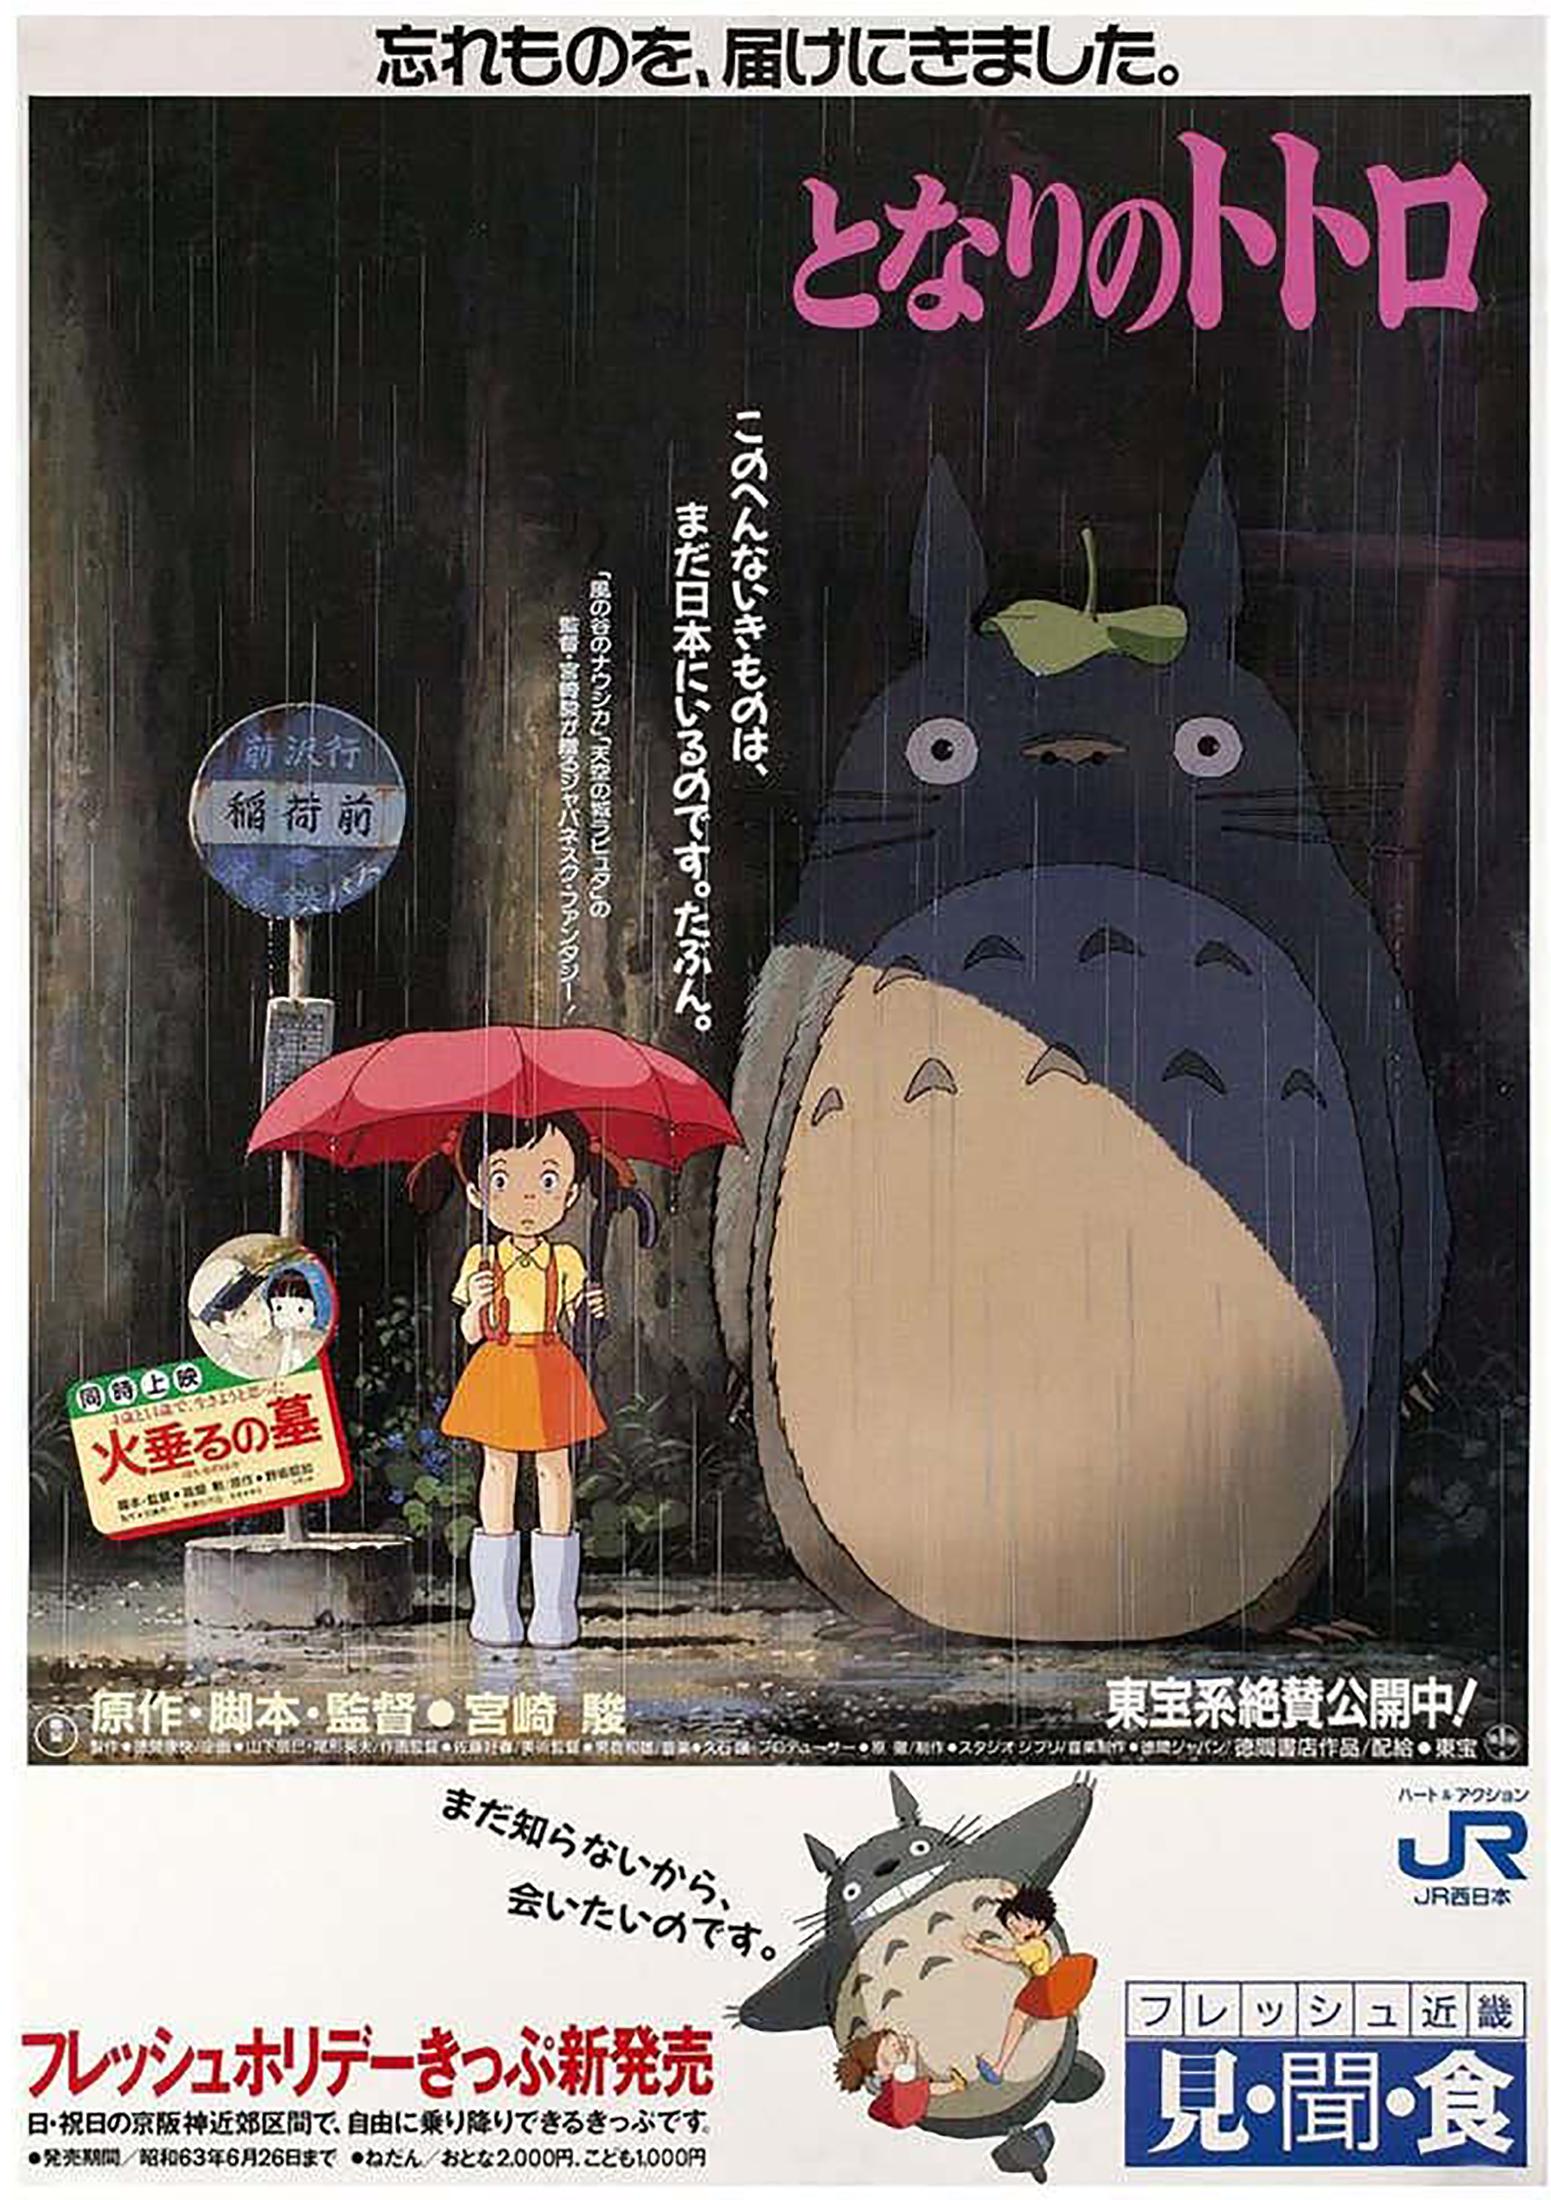 My Neighbour Totoro Original Vintage Large Movie Poster, Japan Rail, Ghibli 1988 - Print by Unknown